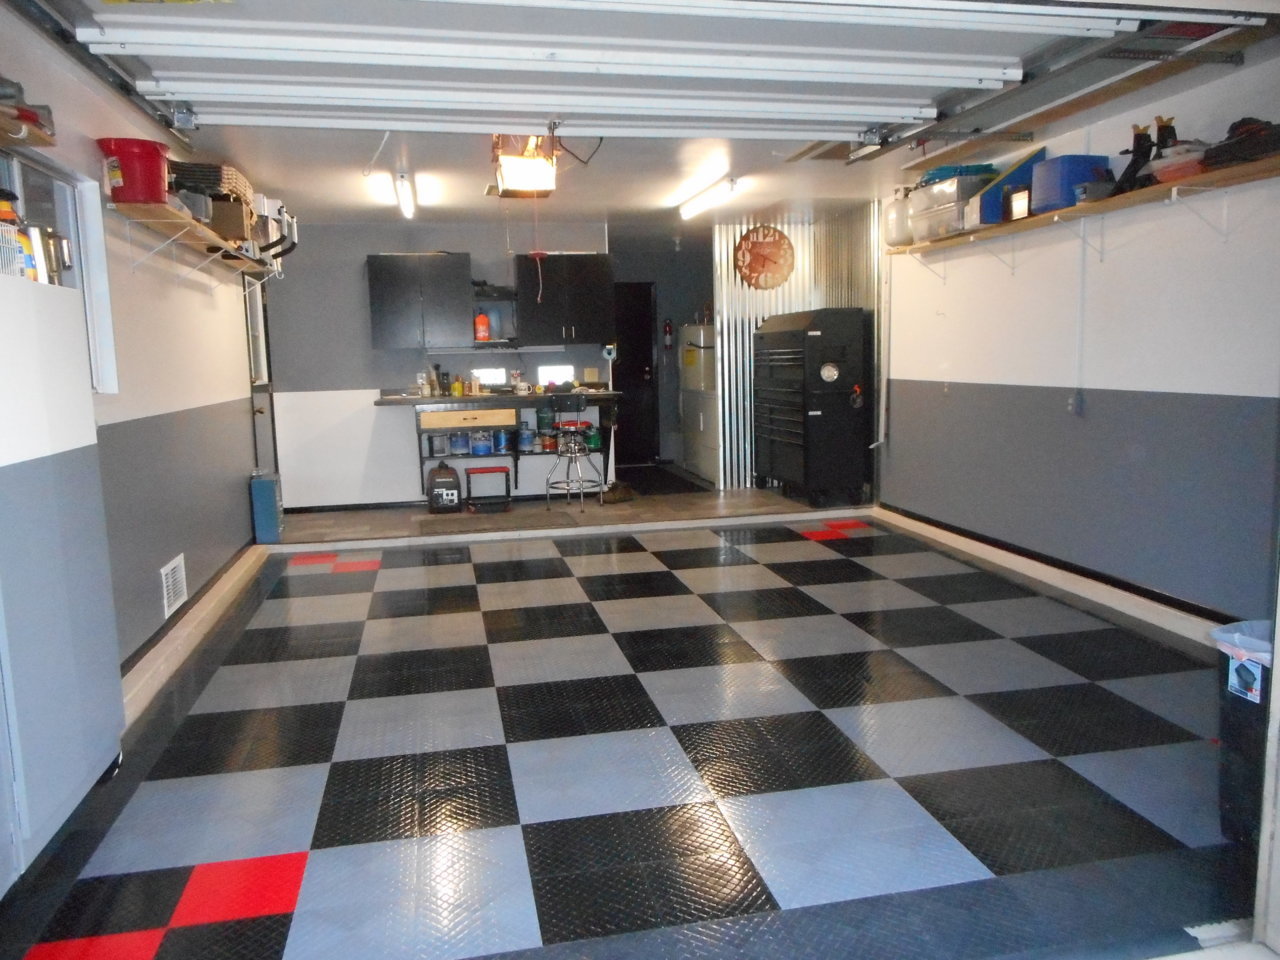 PlastiPro-Loc Heavy Duty Garage Floor Tiles